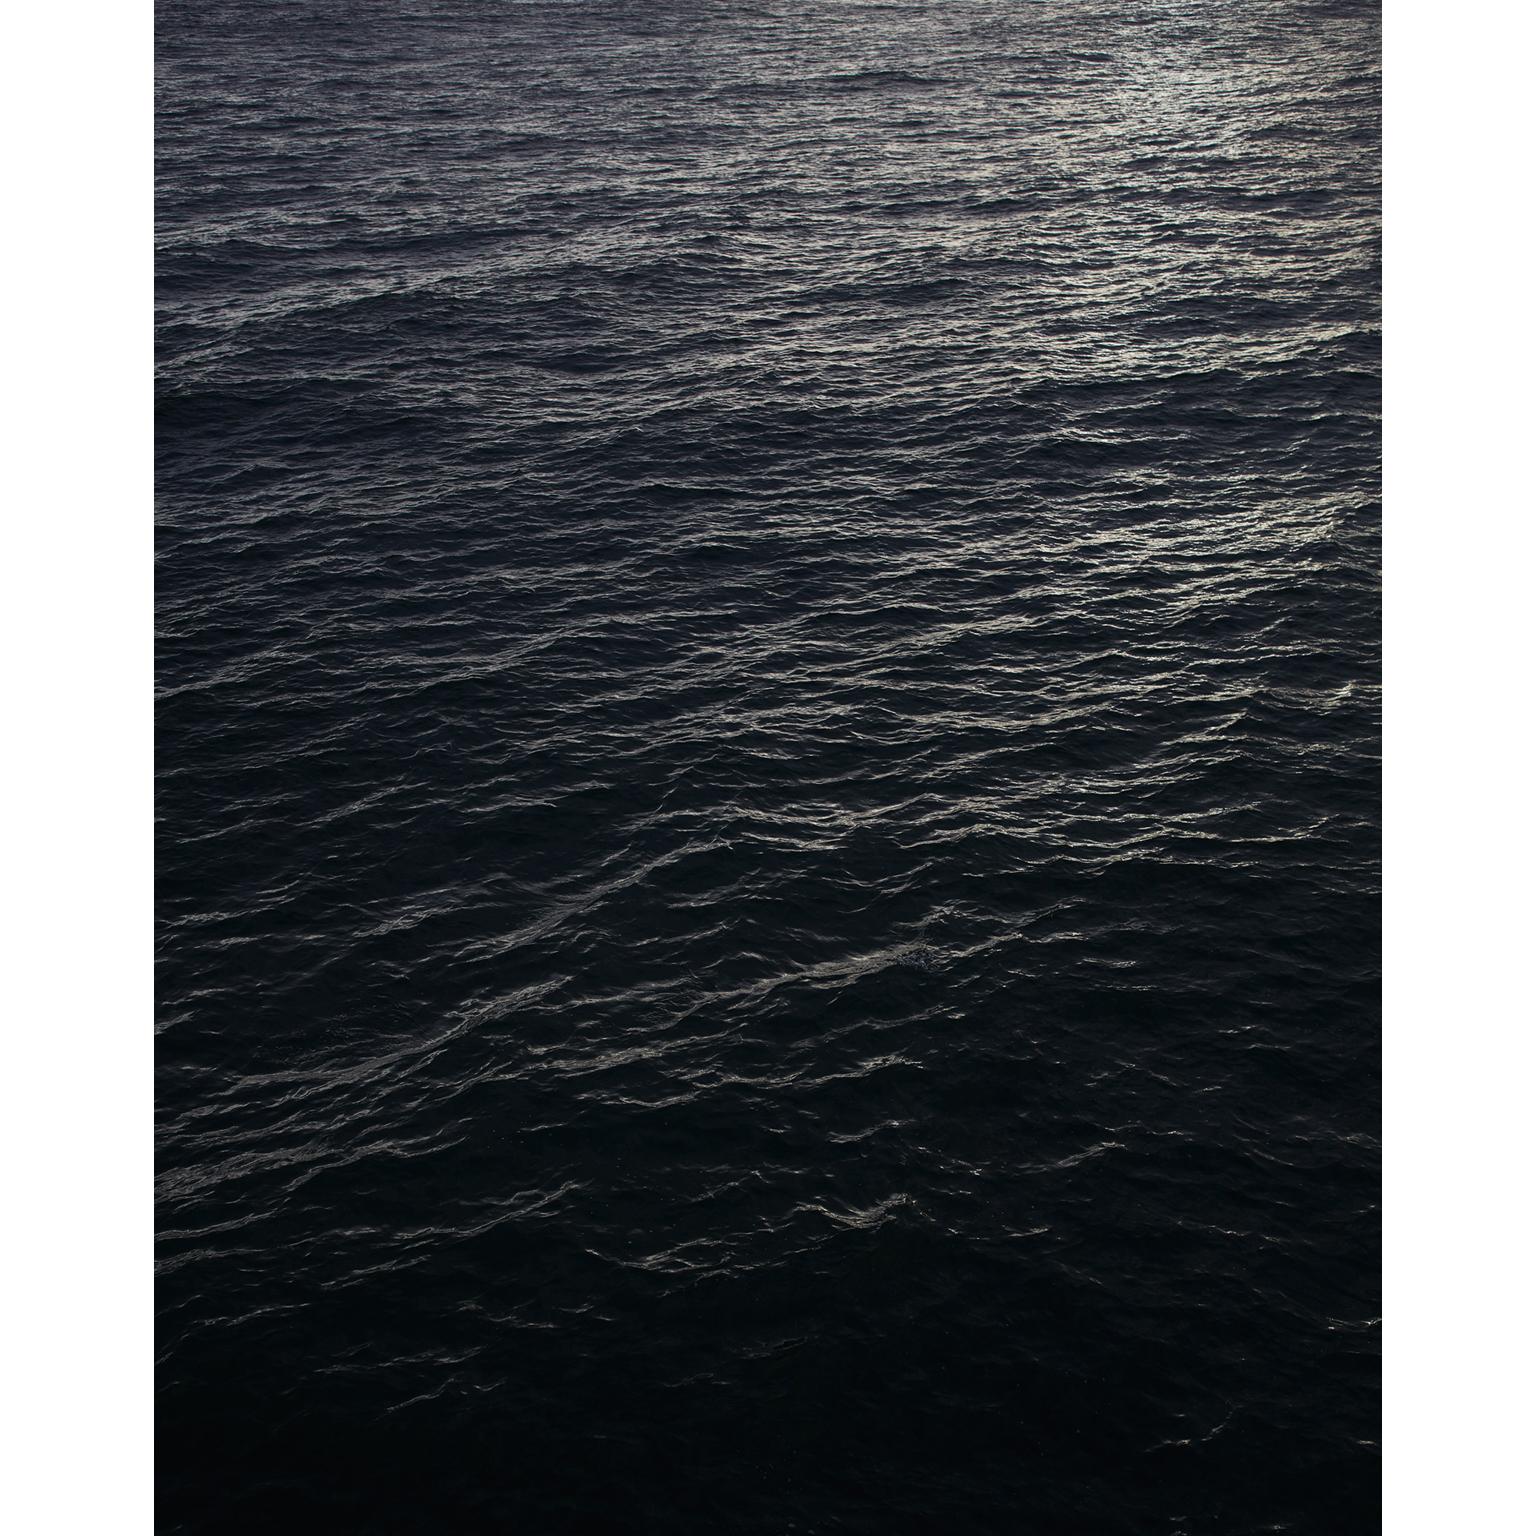 Paysage marin V - photographie grand format de surface d'eau monochrome noire et blanche - Noir Abstract Print par Frank Schott